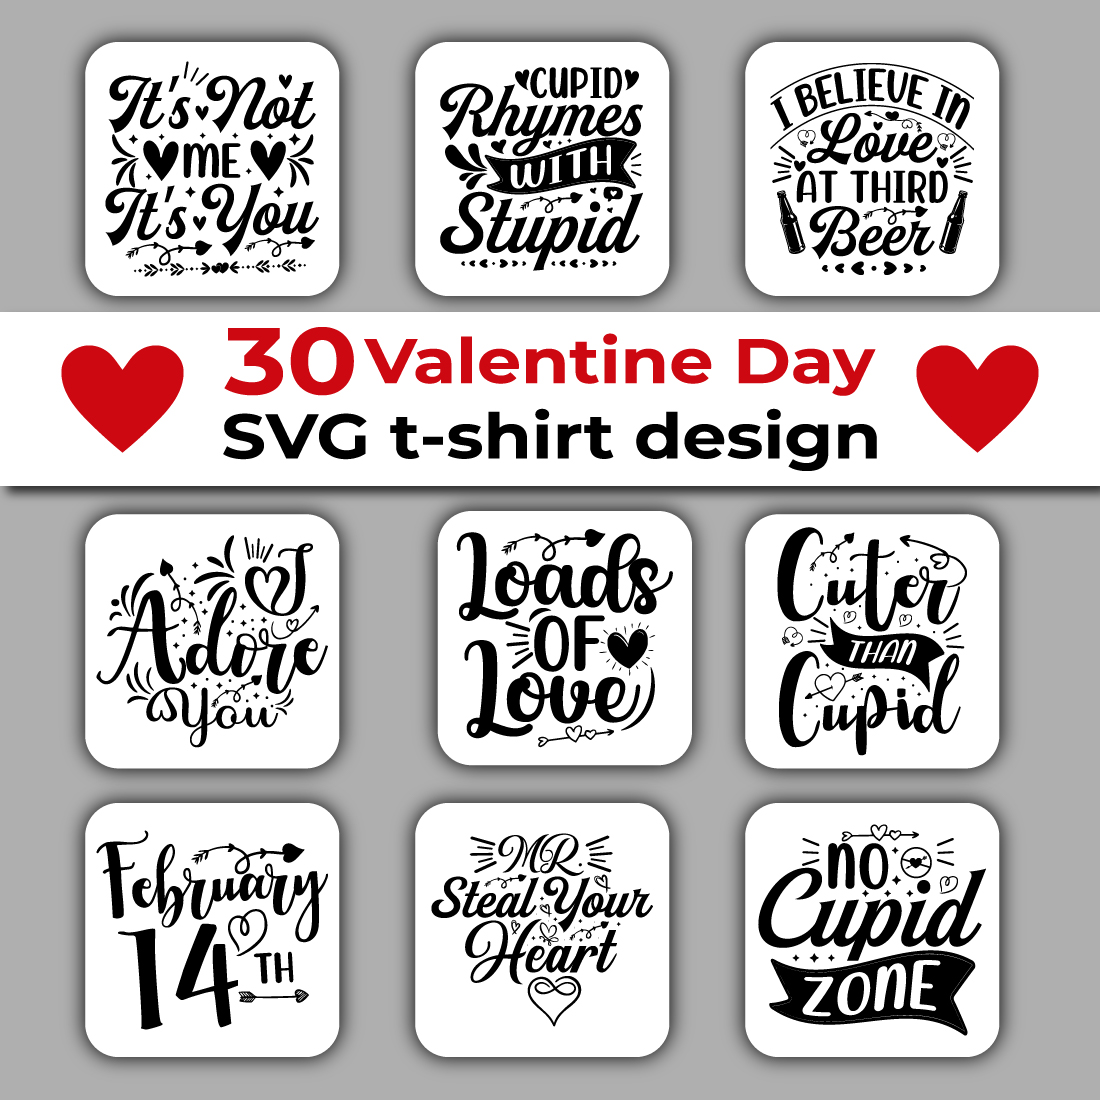 T-shirt Valentine's Day SVG Design Bundle cover image.